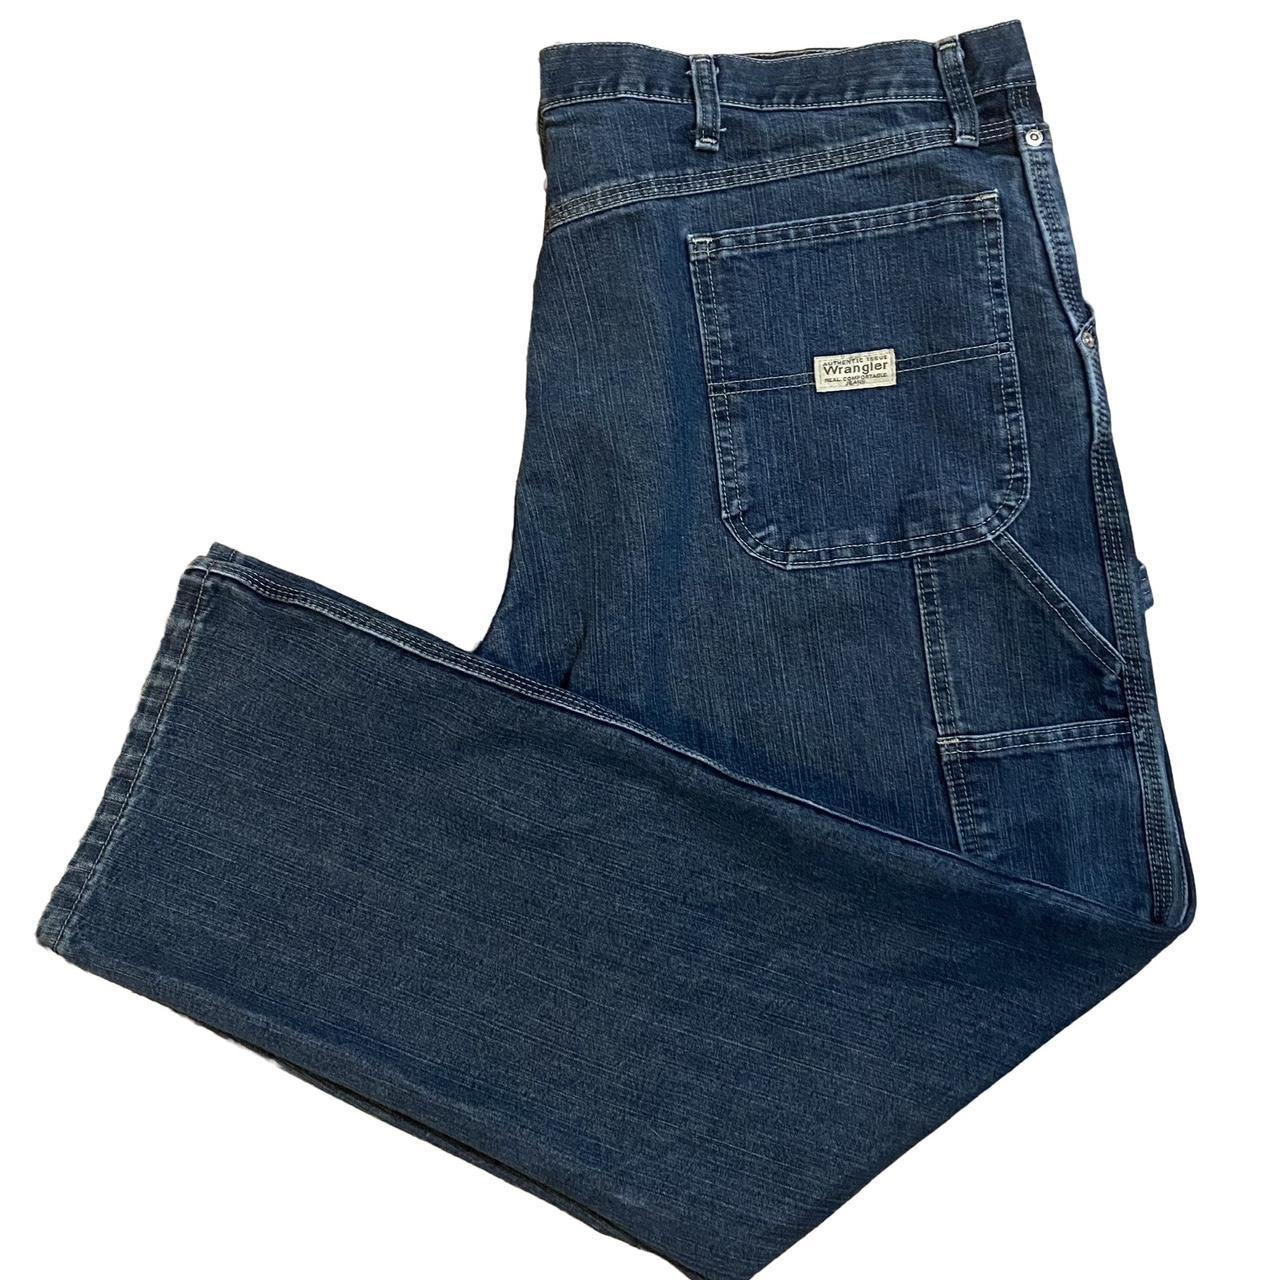 Y2K Wrangler Carpenter Pants Size - W 40 - L... - Depop